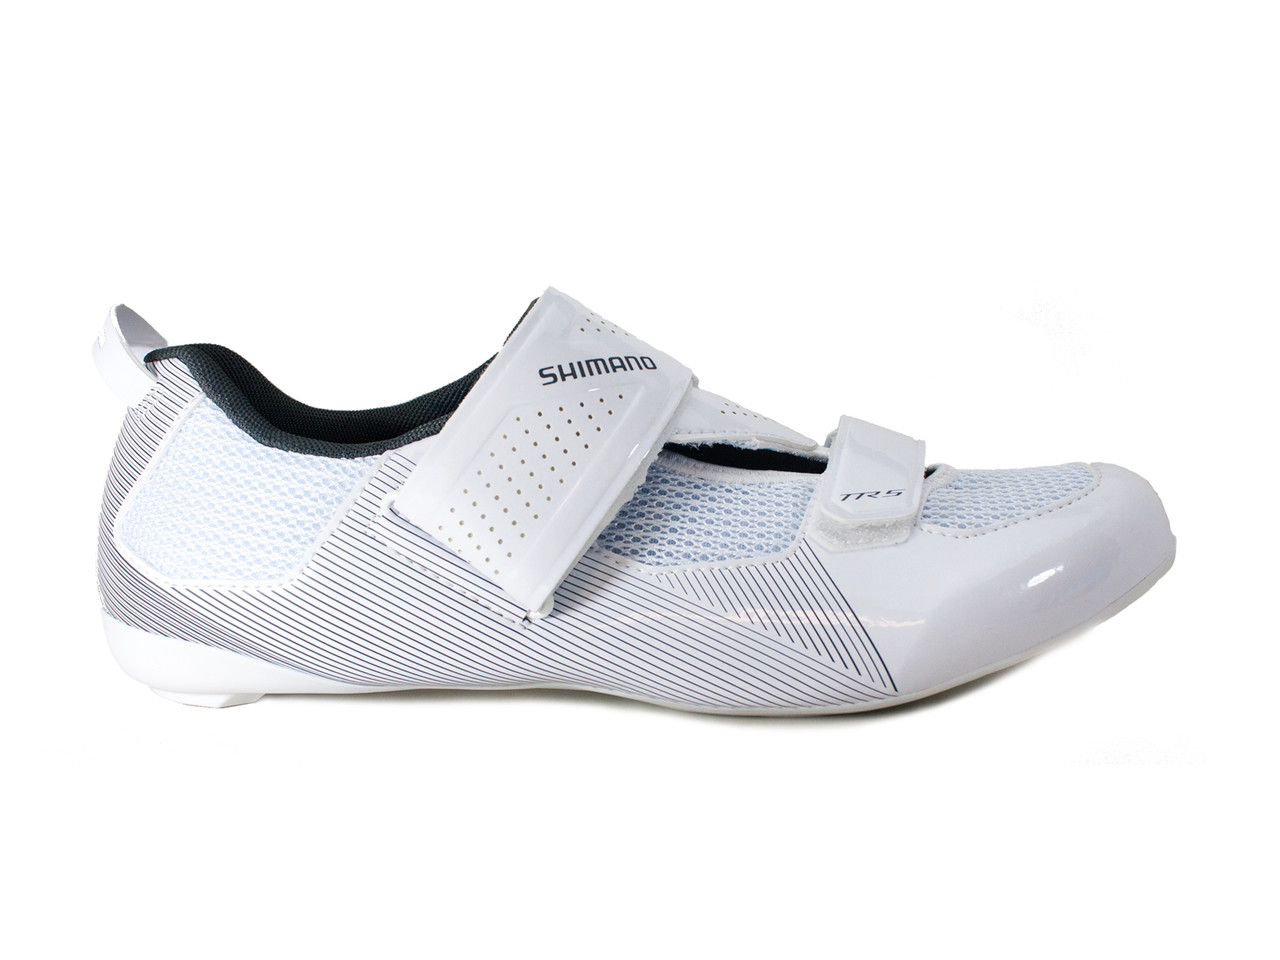 shimano shoes triathlon